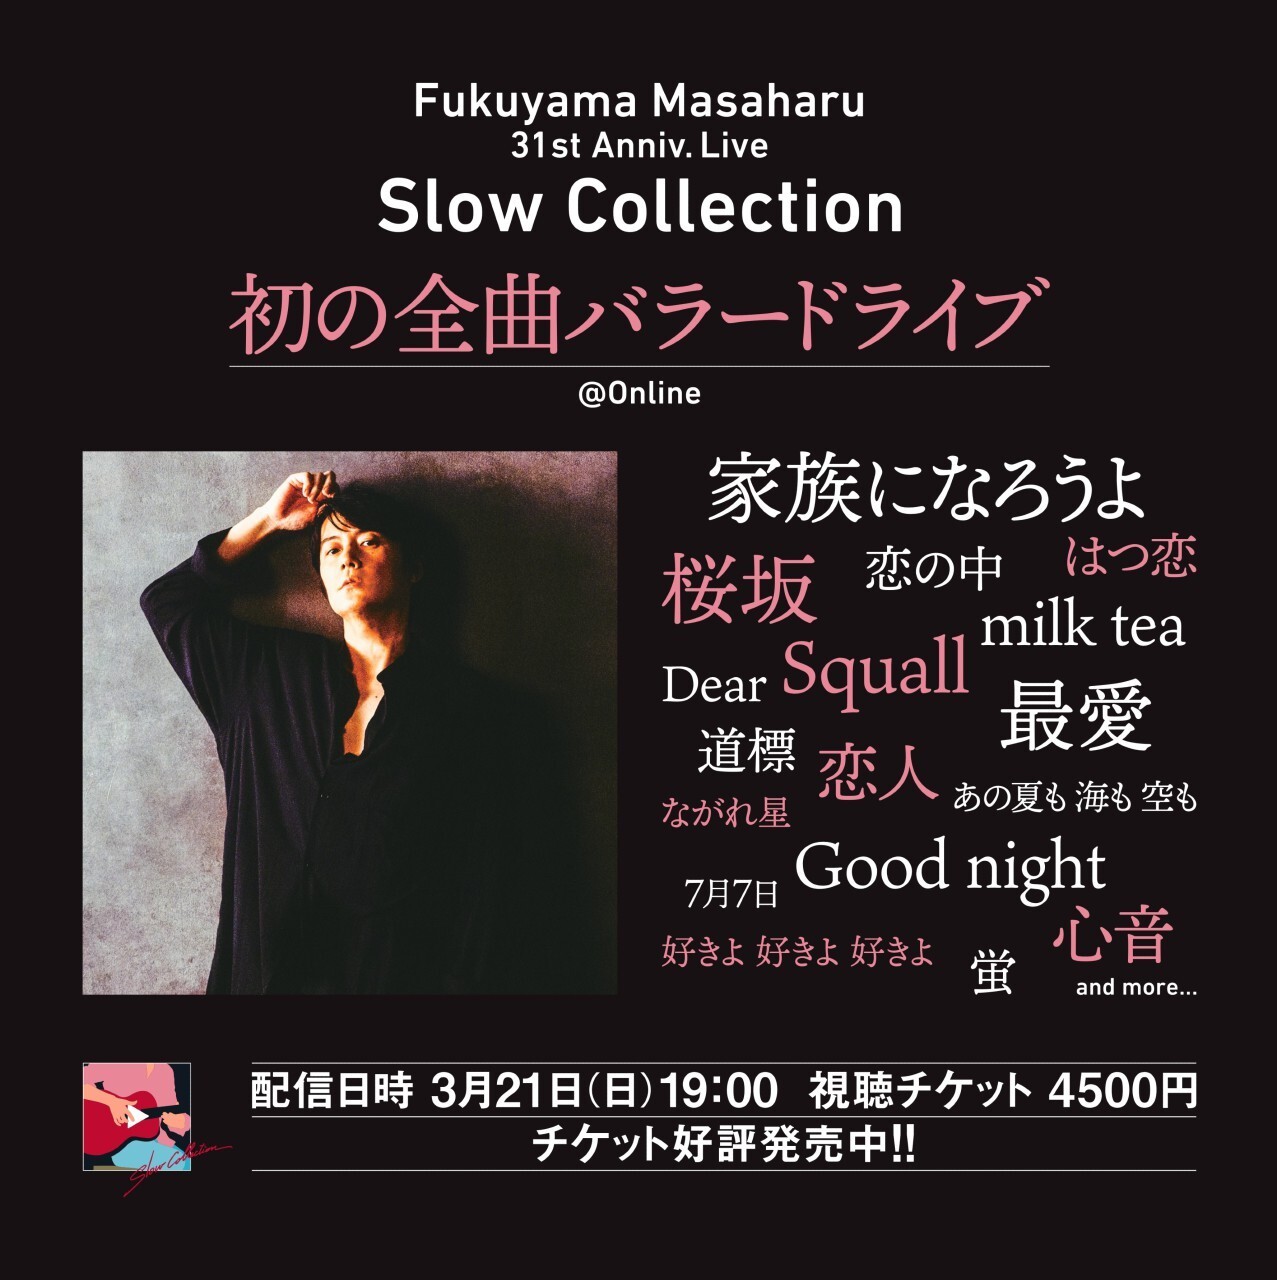 福山雅治 初の全曲バラードライブ Fukuyama Masaharu 31st Anniv Live Slow Collection 21 03 21 日 Tokyo Japan ローチケ Live Streaming